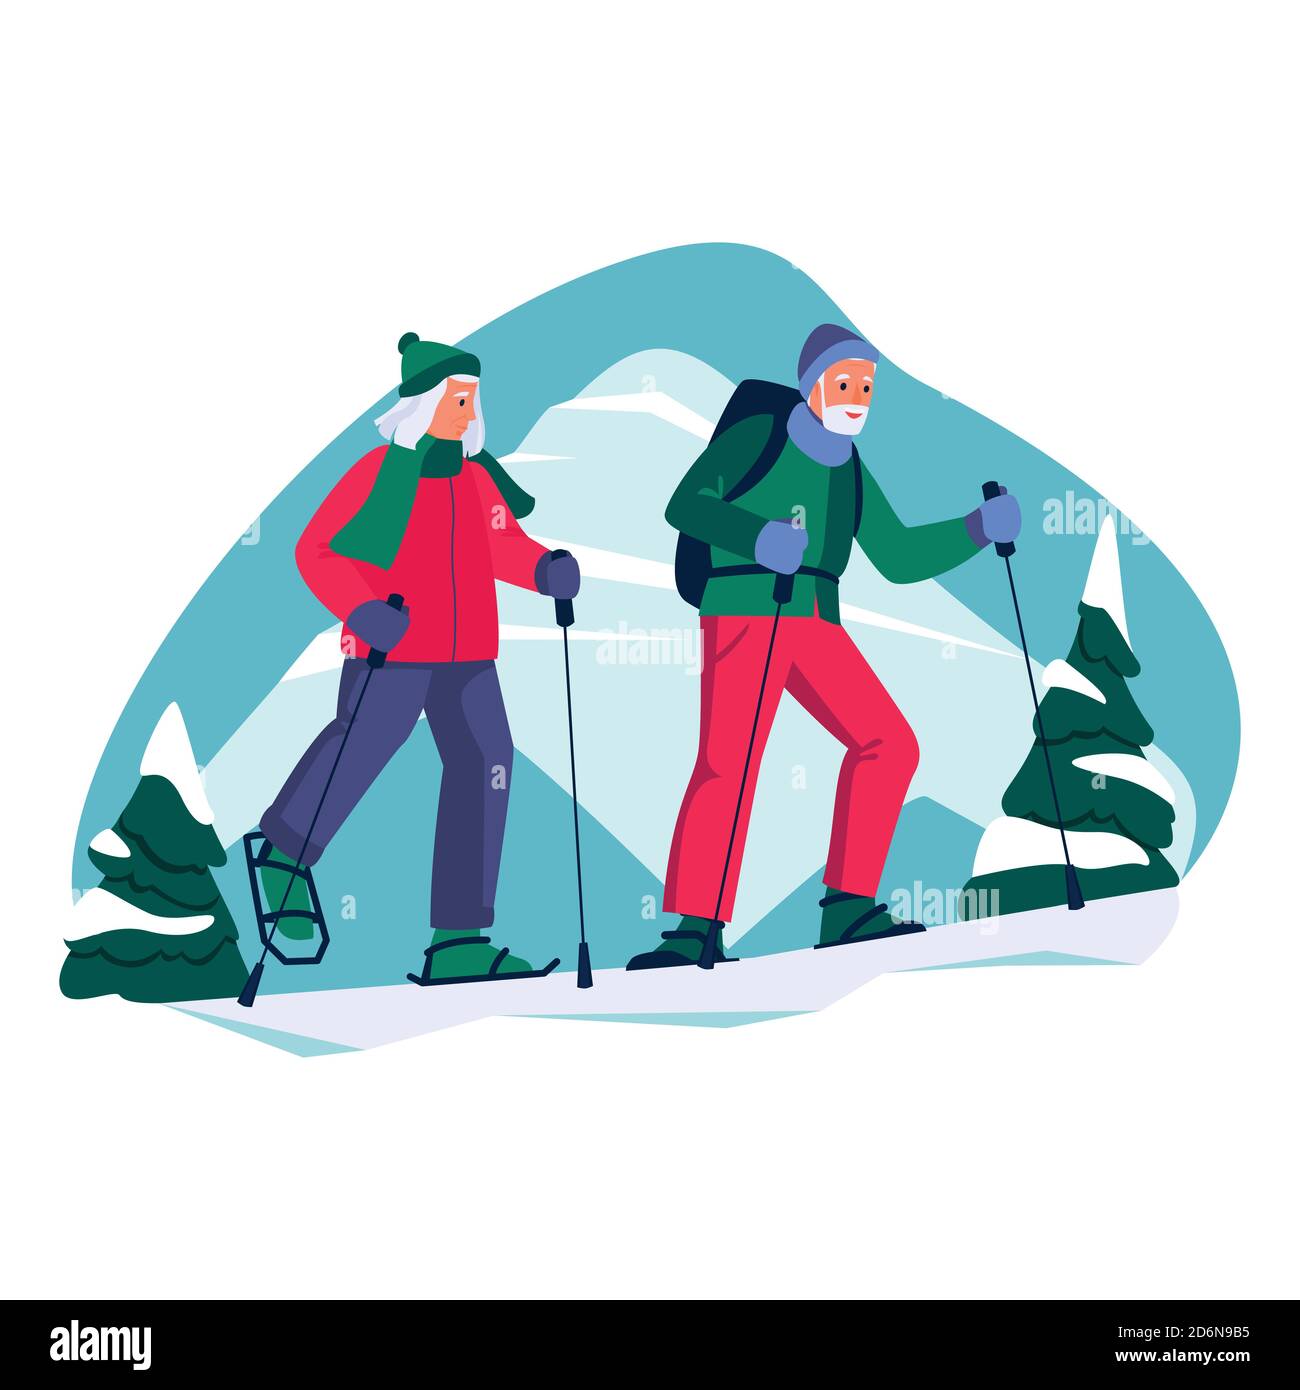 Coppie anziane nordic walking in montagna. Vector cartoon piatto illustrazione del tempo libero invernale all'aperto. Concetto di sano stile di vita attivo di sen Illustrazione Vettoriale